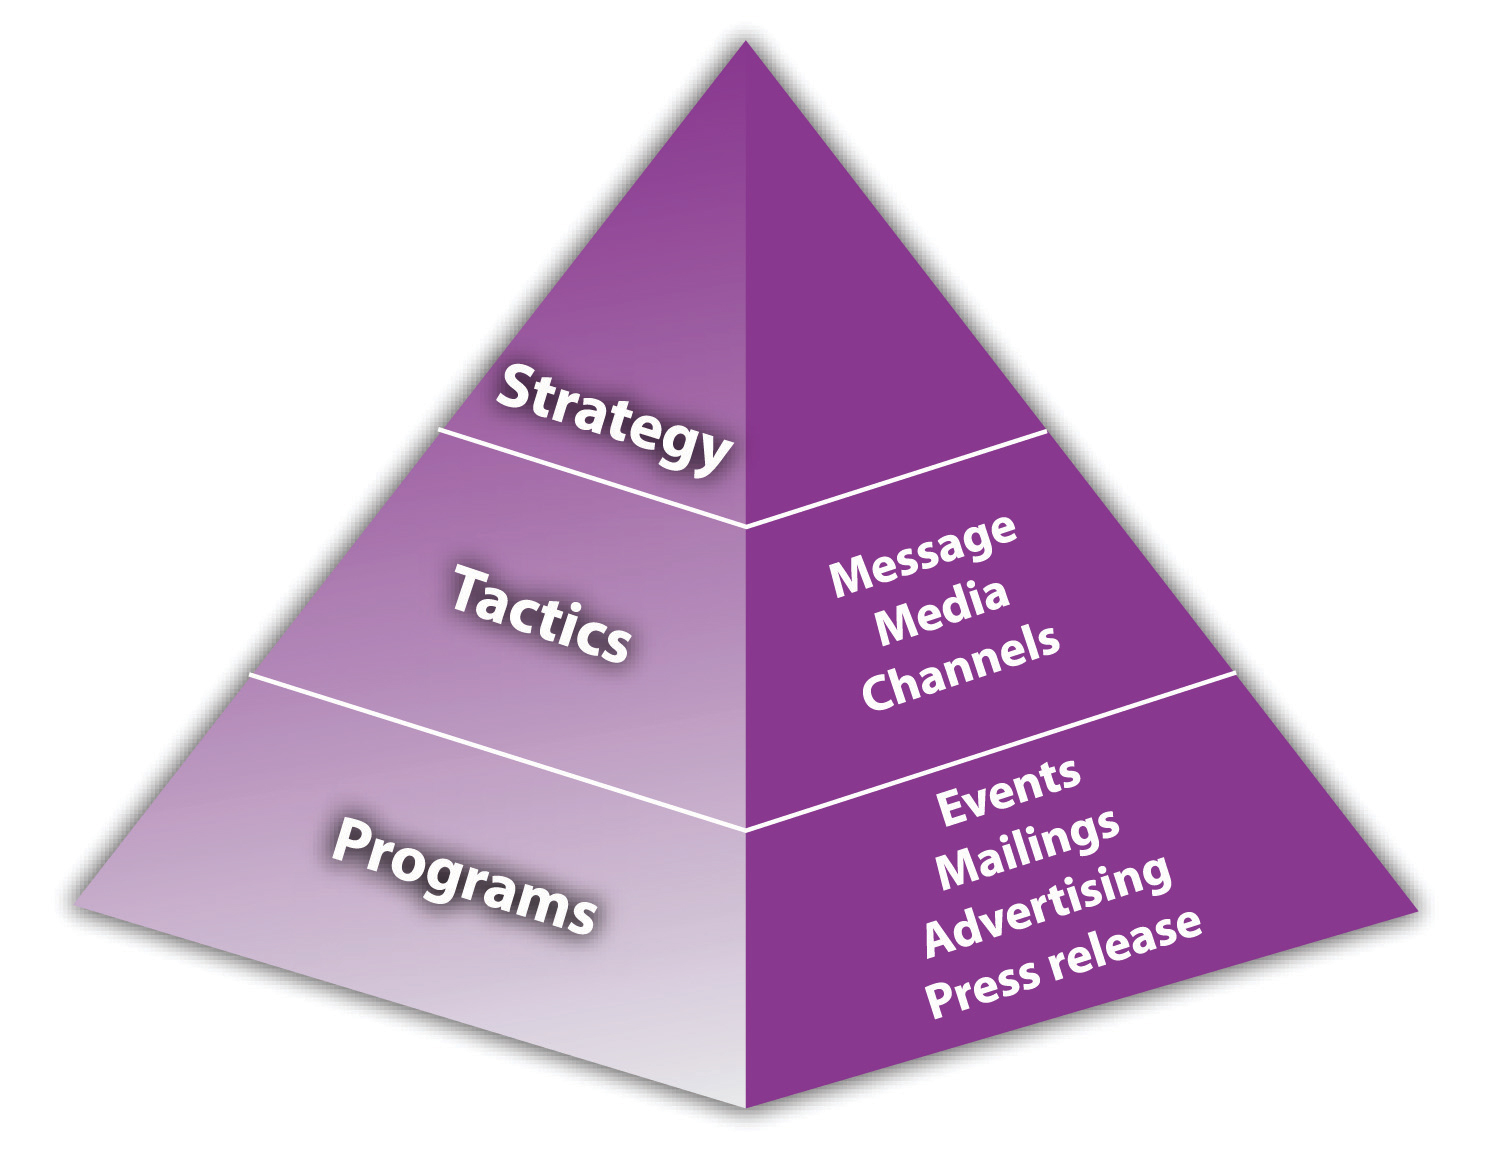 Marketing Strategy Pyramid: strategy, tactics, and programs